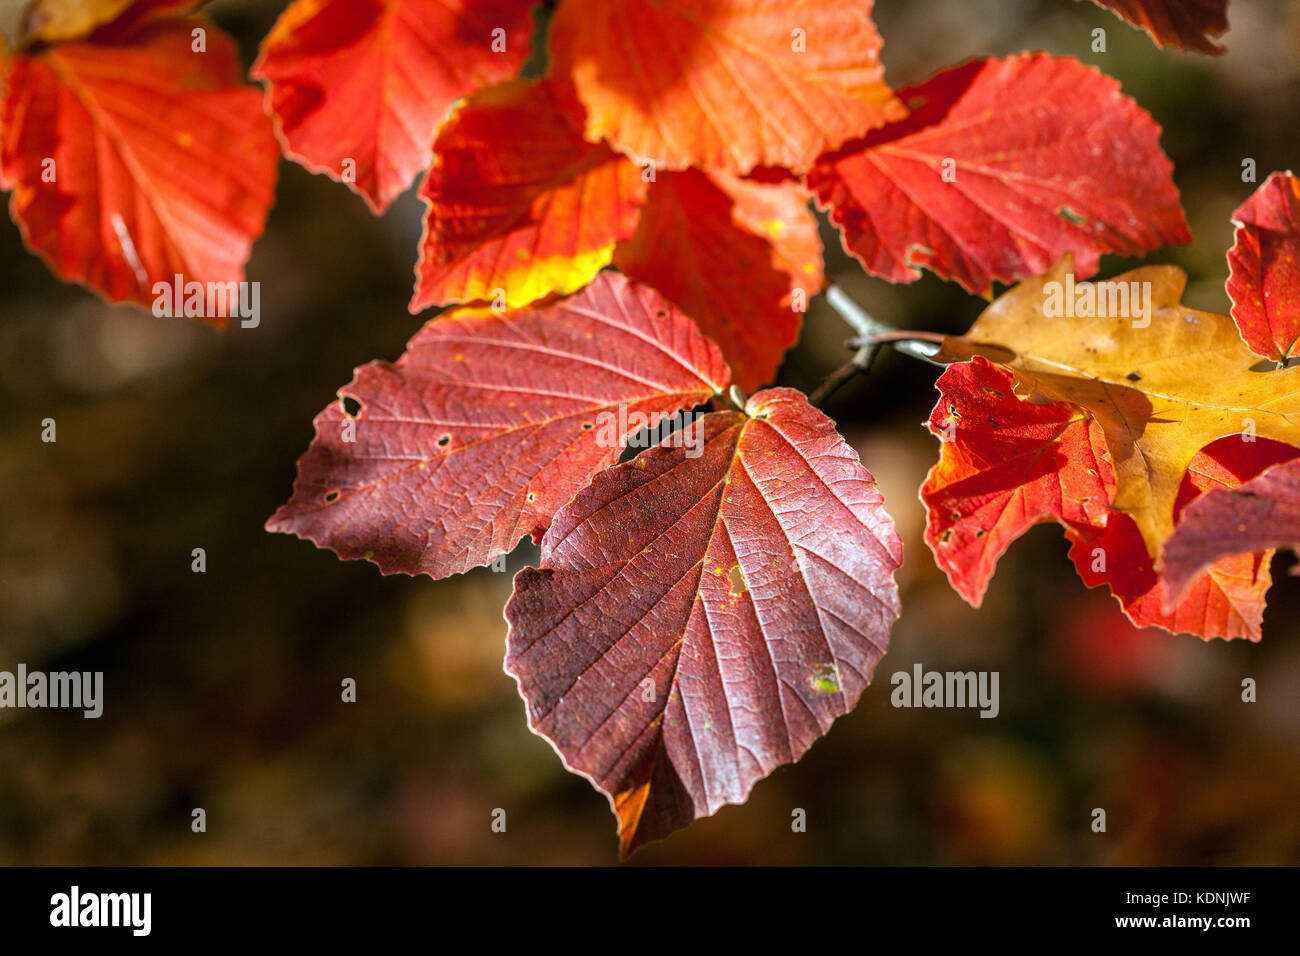 Strega nocciolo Hamamelis intermedia ' Primavera ', foglie rosse autunno in autunno tagliente sole rosso autunno foglie Foto Stock